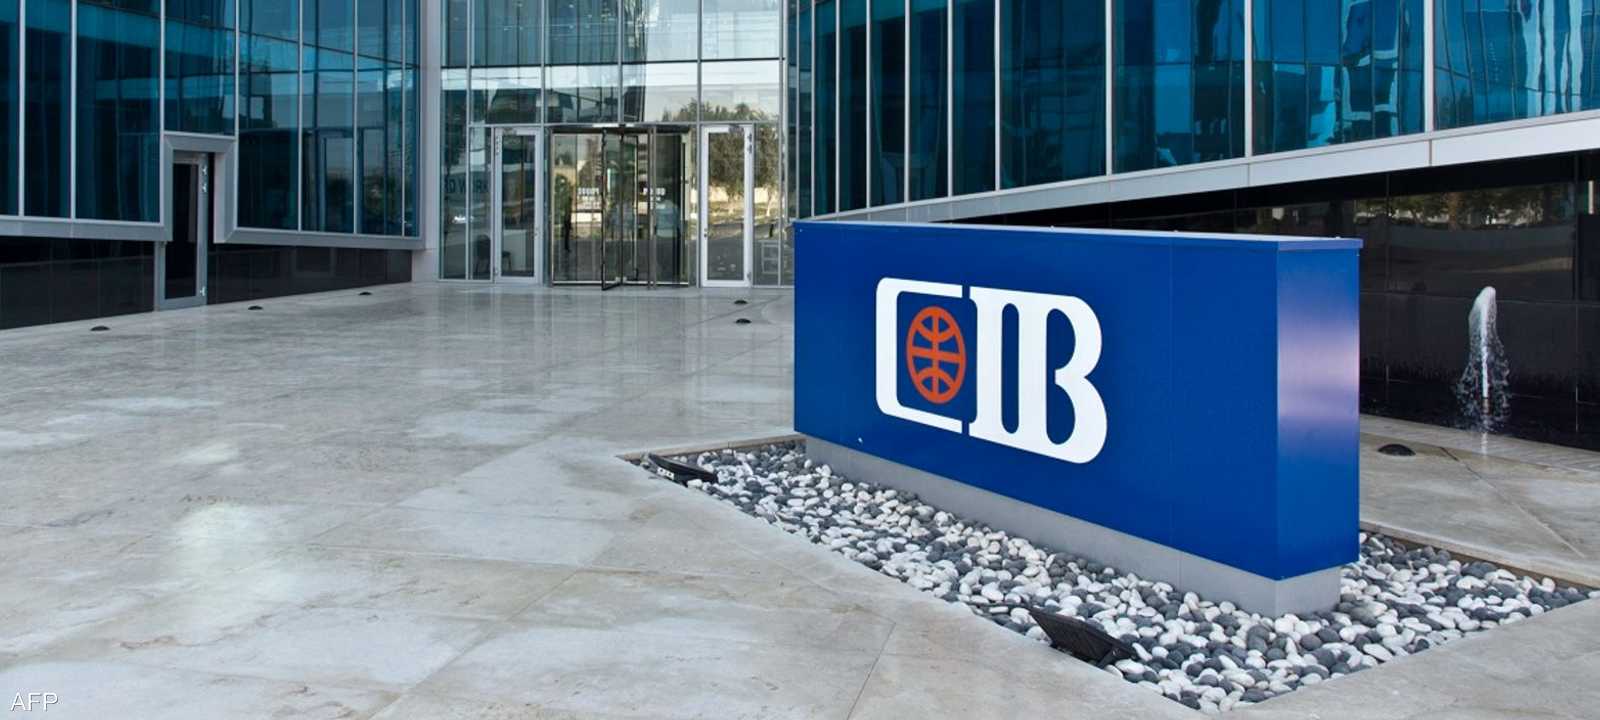 البنك التجاري الدولي المصري